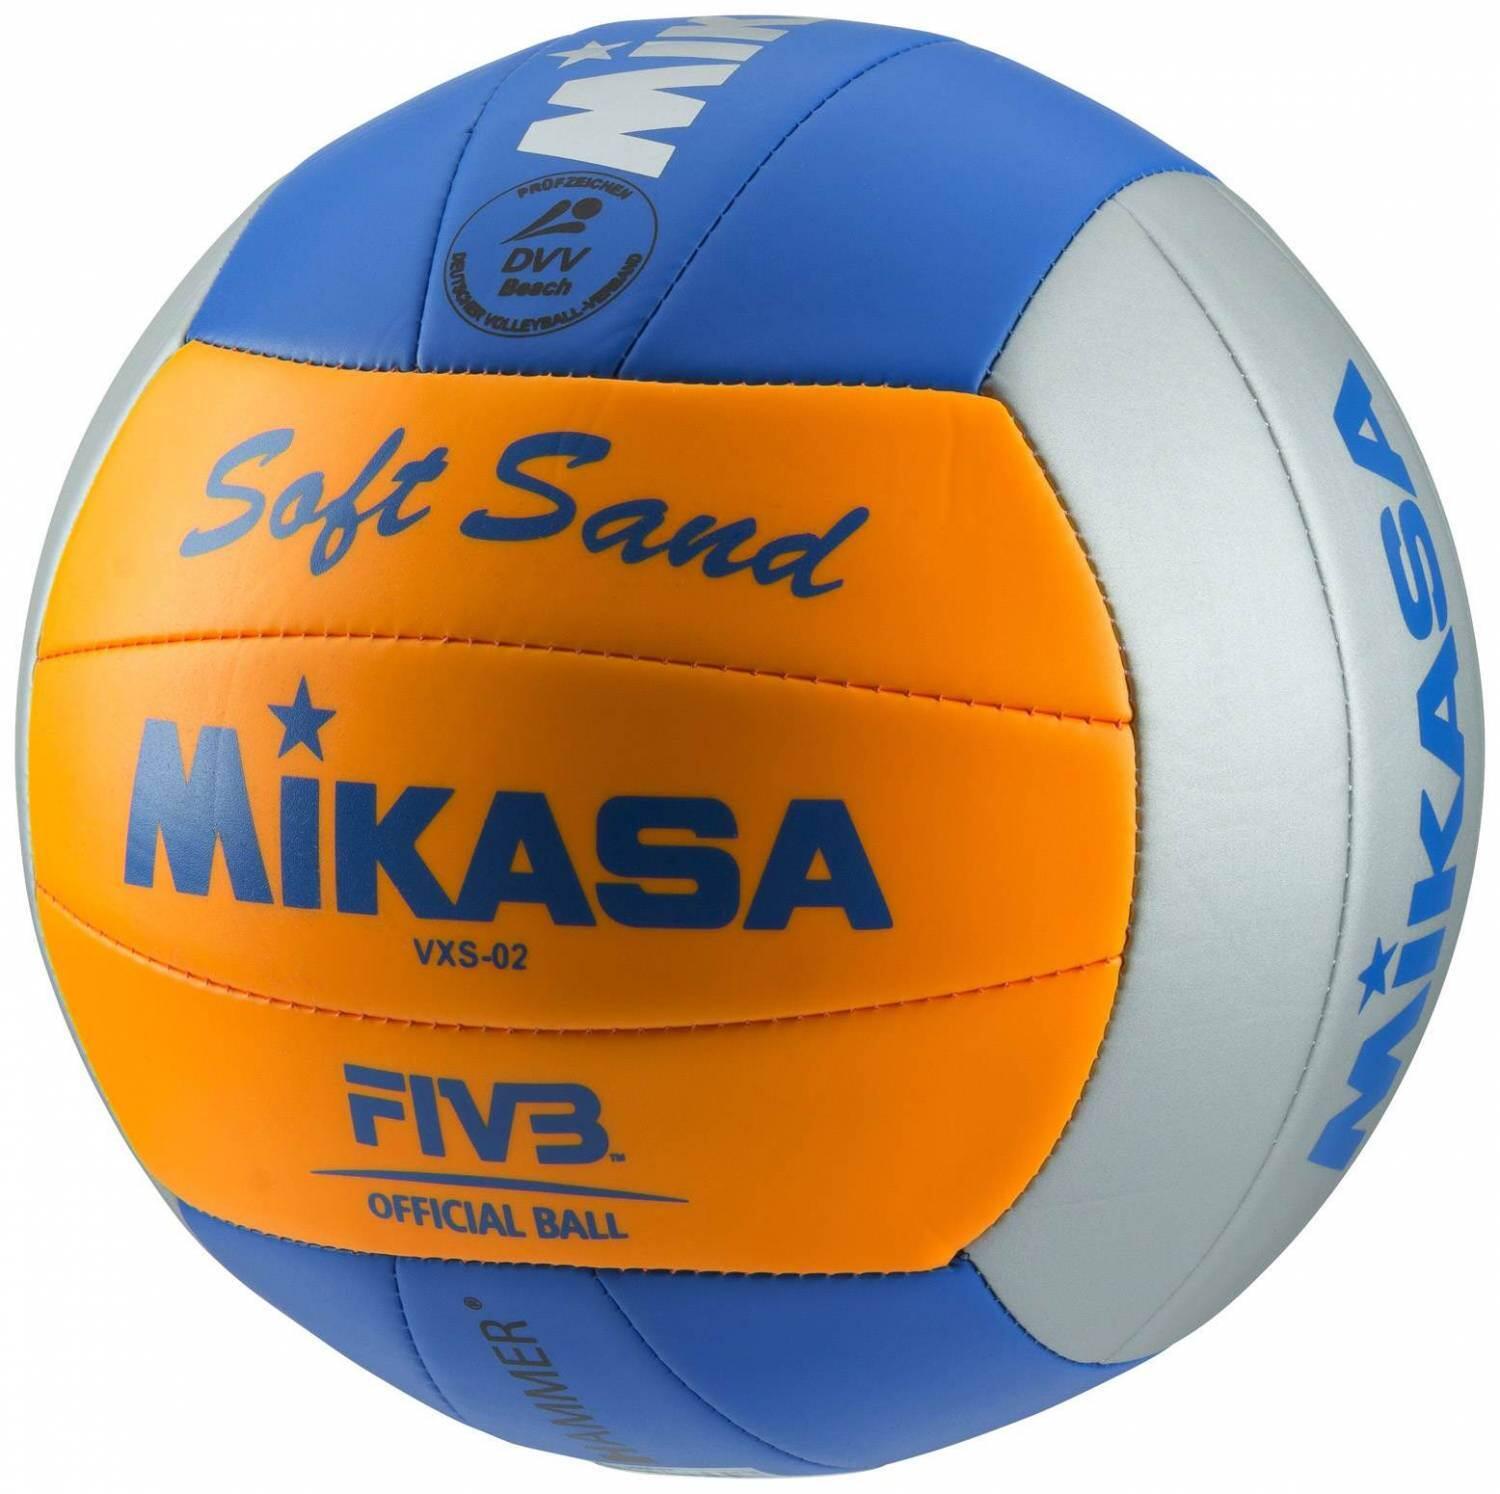 Mikasa Beachvolleyball Soft Sand (5, 006 grau/orange/blau) von Mikasa